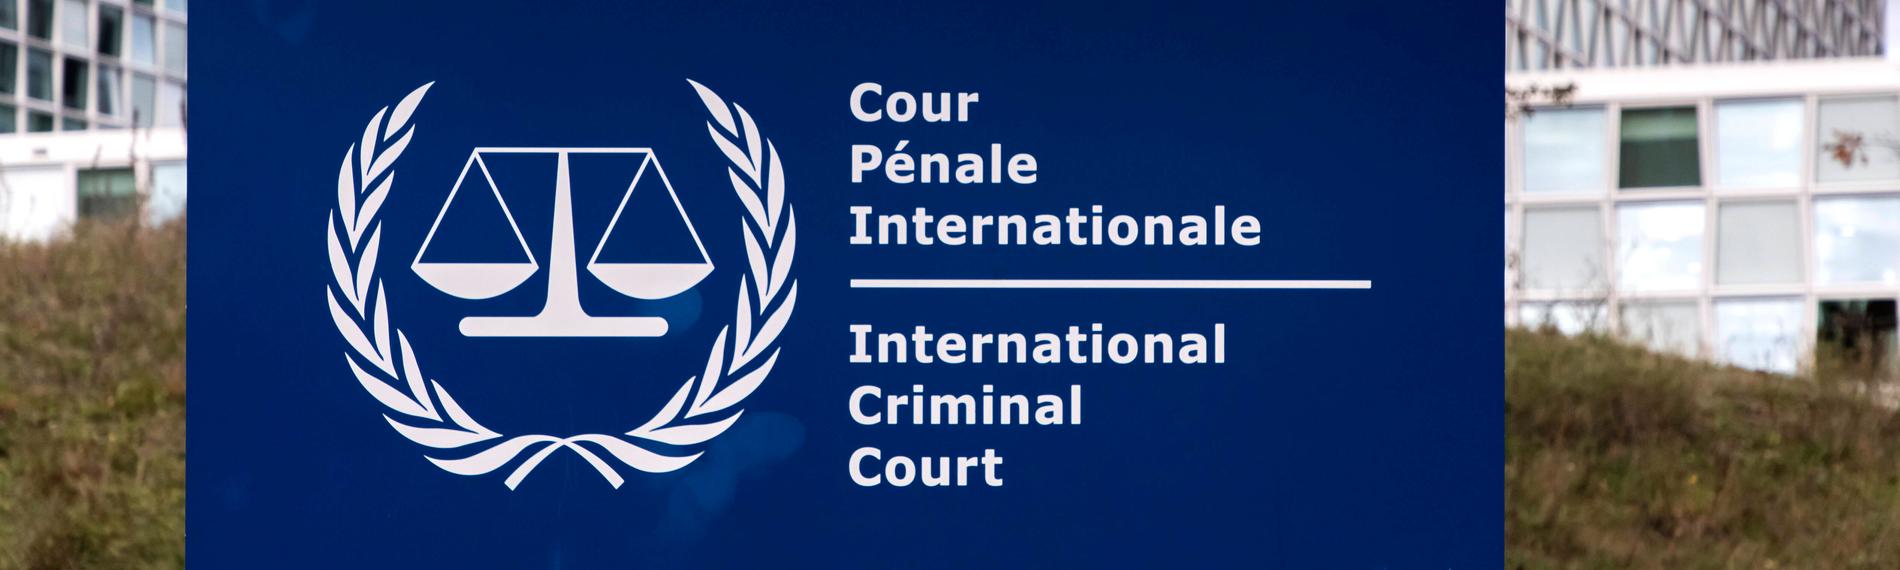 Außenansicht des Internationalen Strafgerichtshofs in Den Haag.